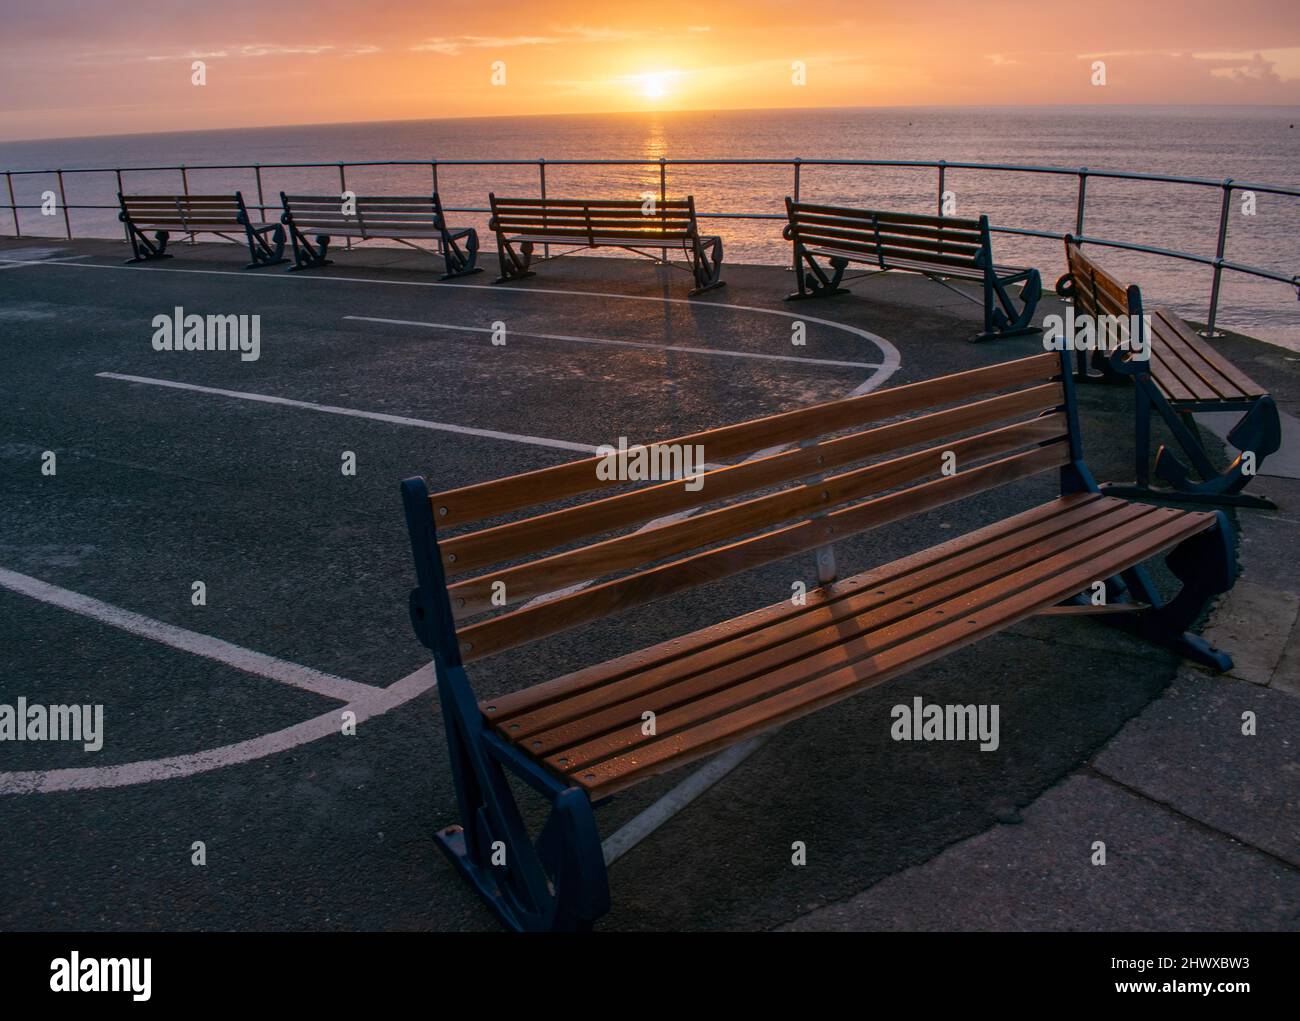 Eine geschwungene Reihe von sechs Holzbänken zeigt an einem kalten, klaren Morgen auf das Meer. Bernsteinfarbenes Sonnenlicht bringt sie in ein orangefarbenes Leuchten, während sie leer stehen Stockfoto